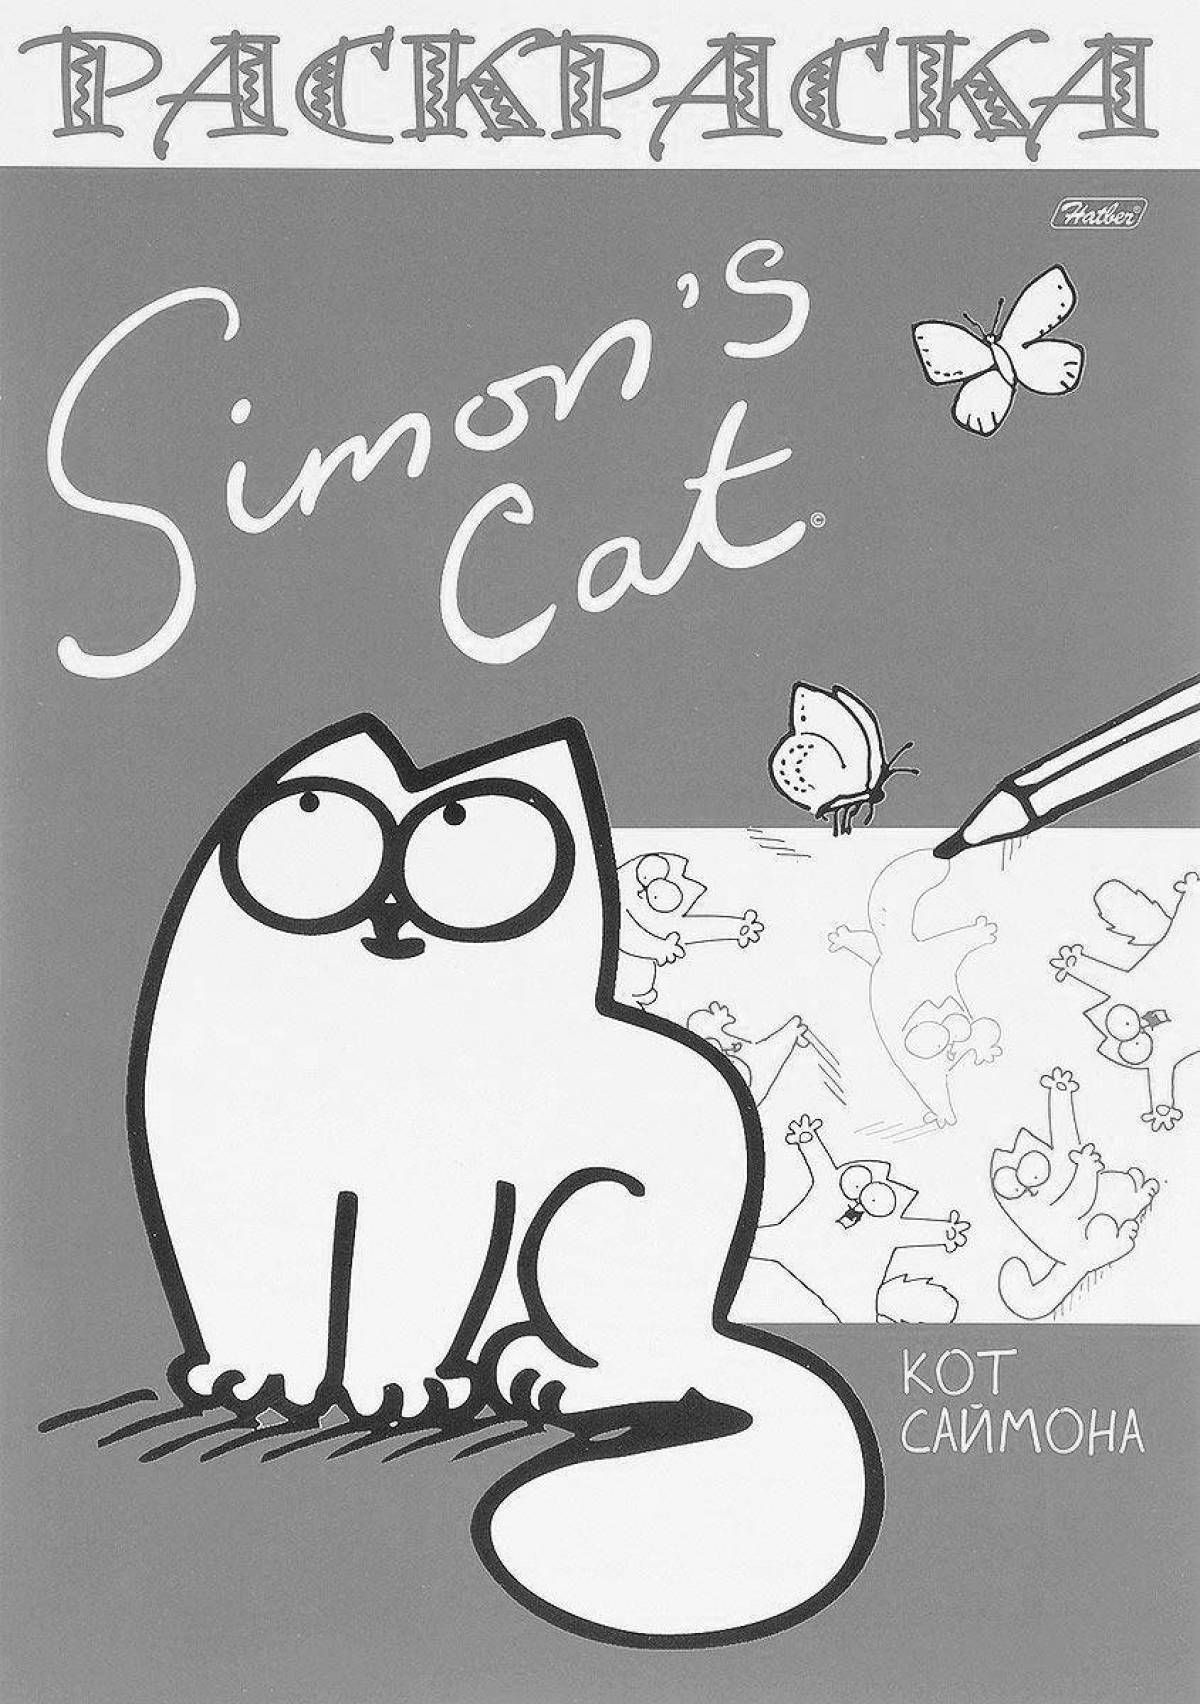 Simon's playful cat coloring book